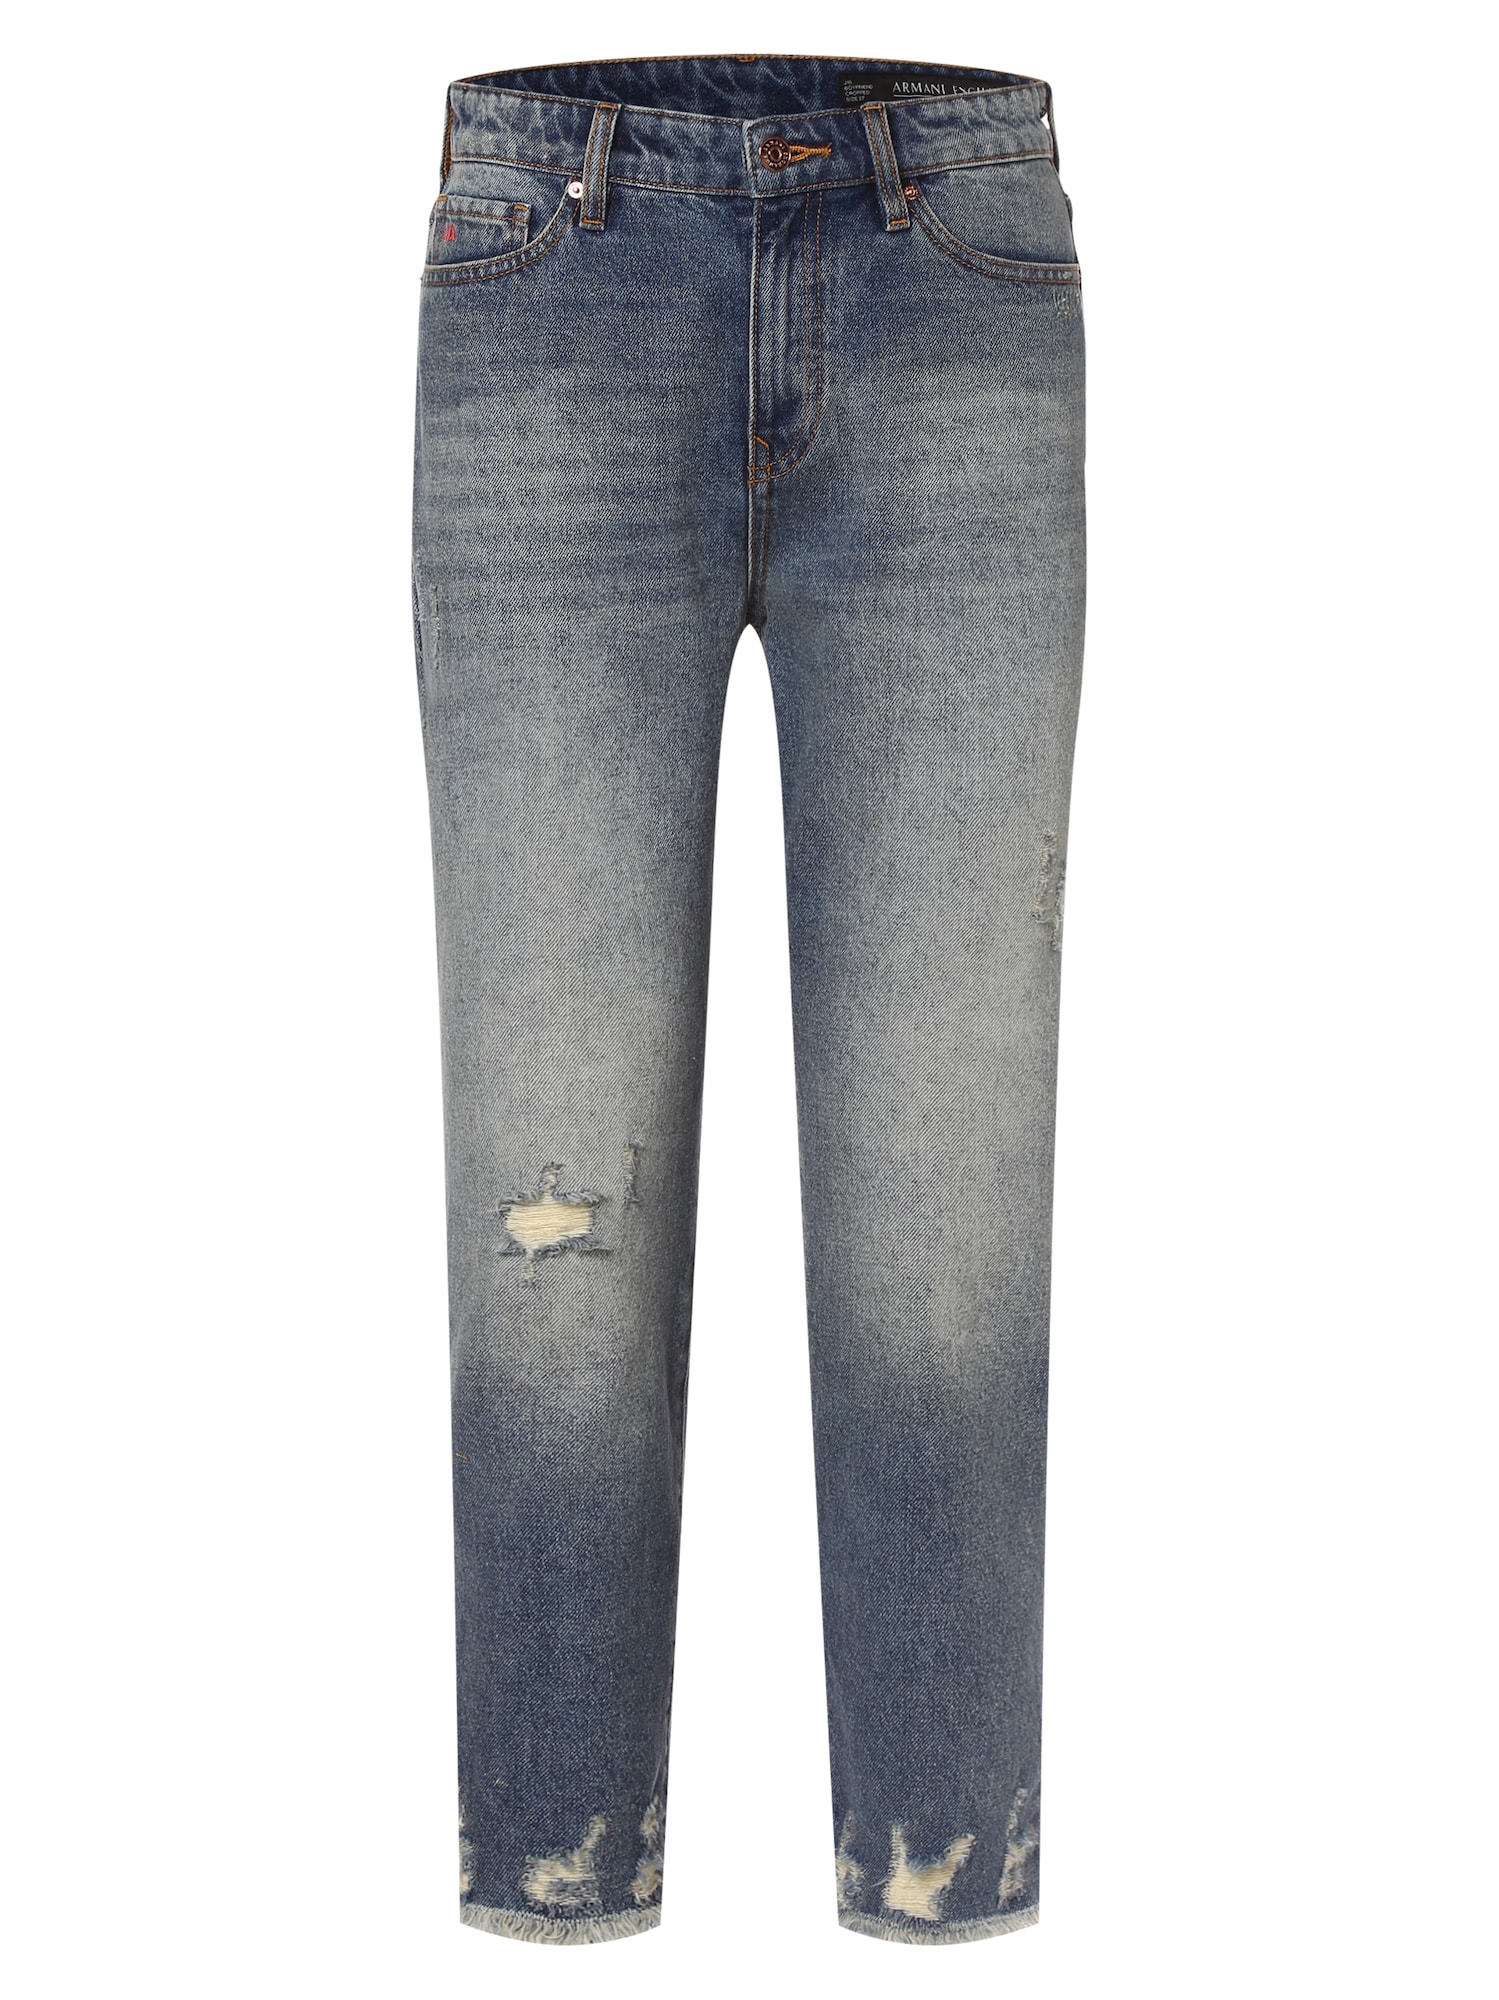 ARMANI EXCHANGE Jeans hellblau